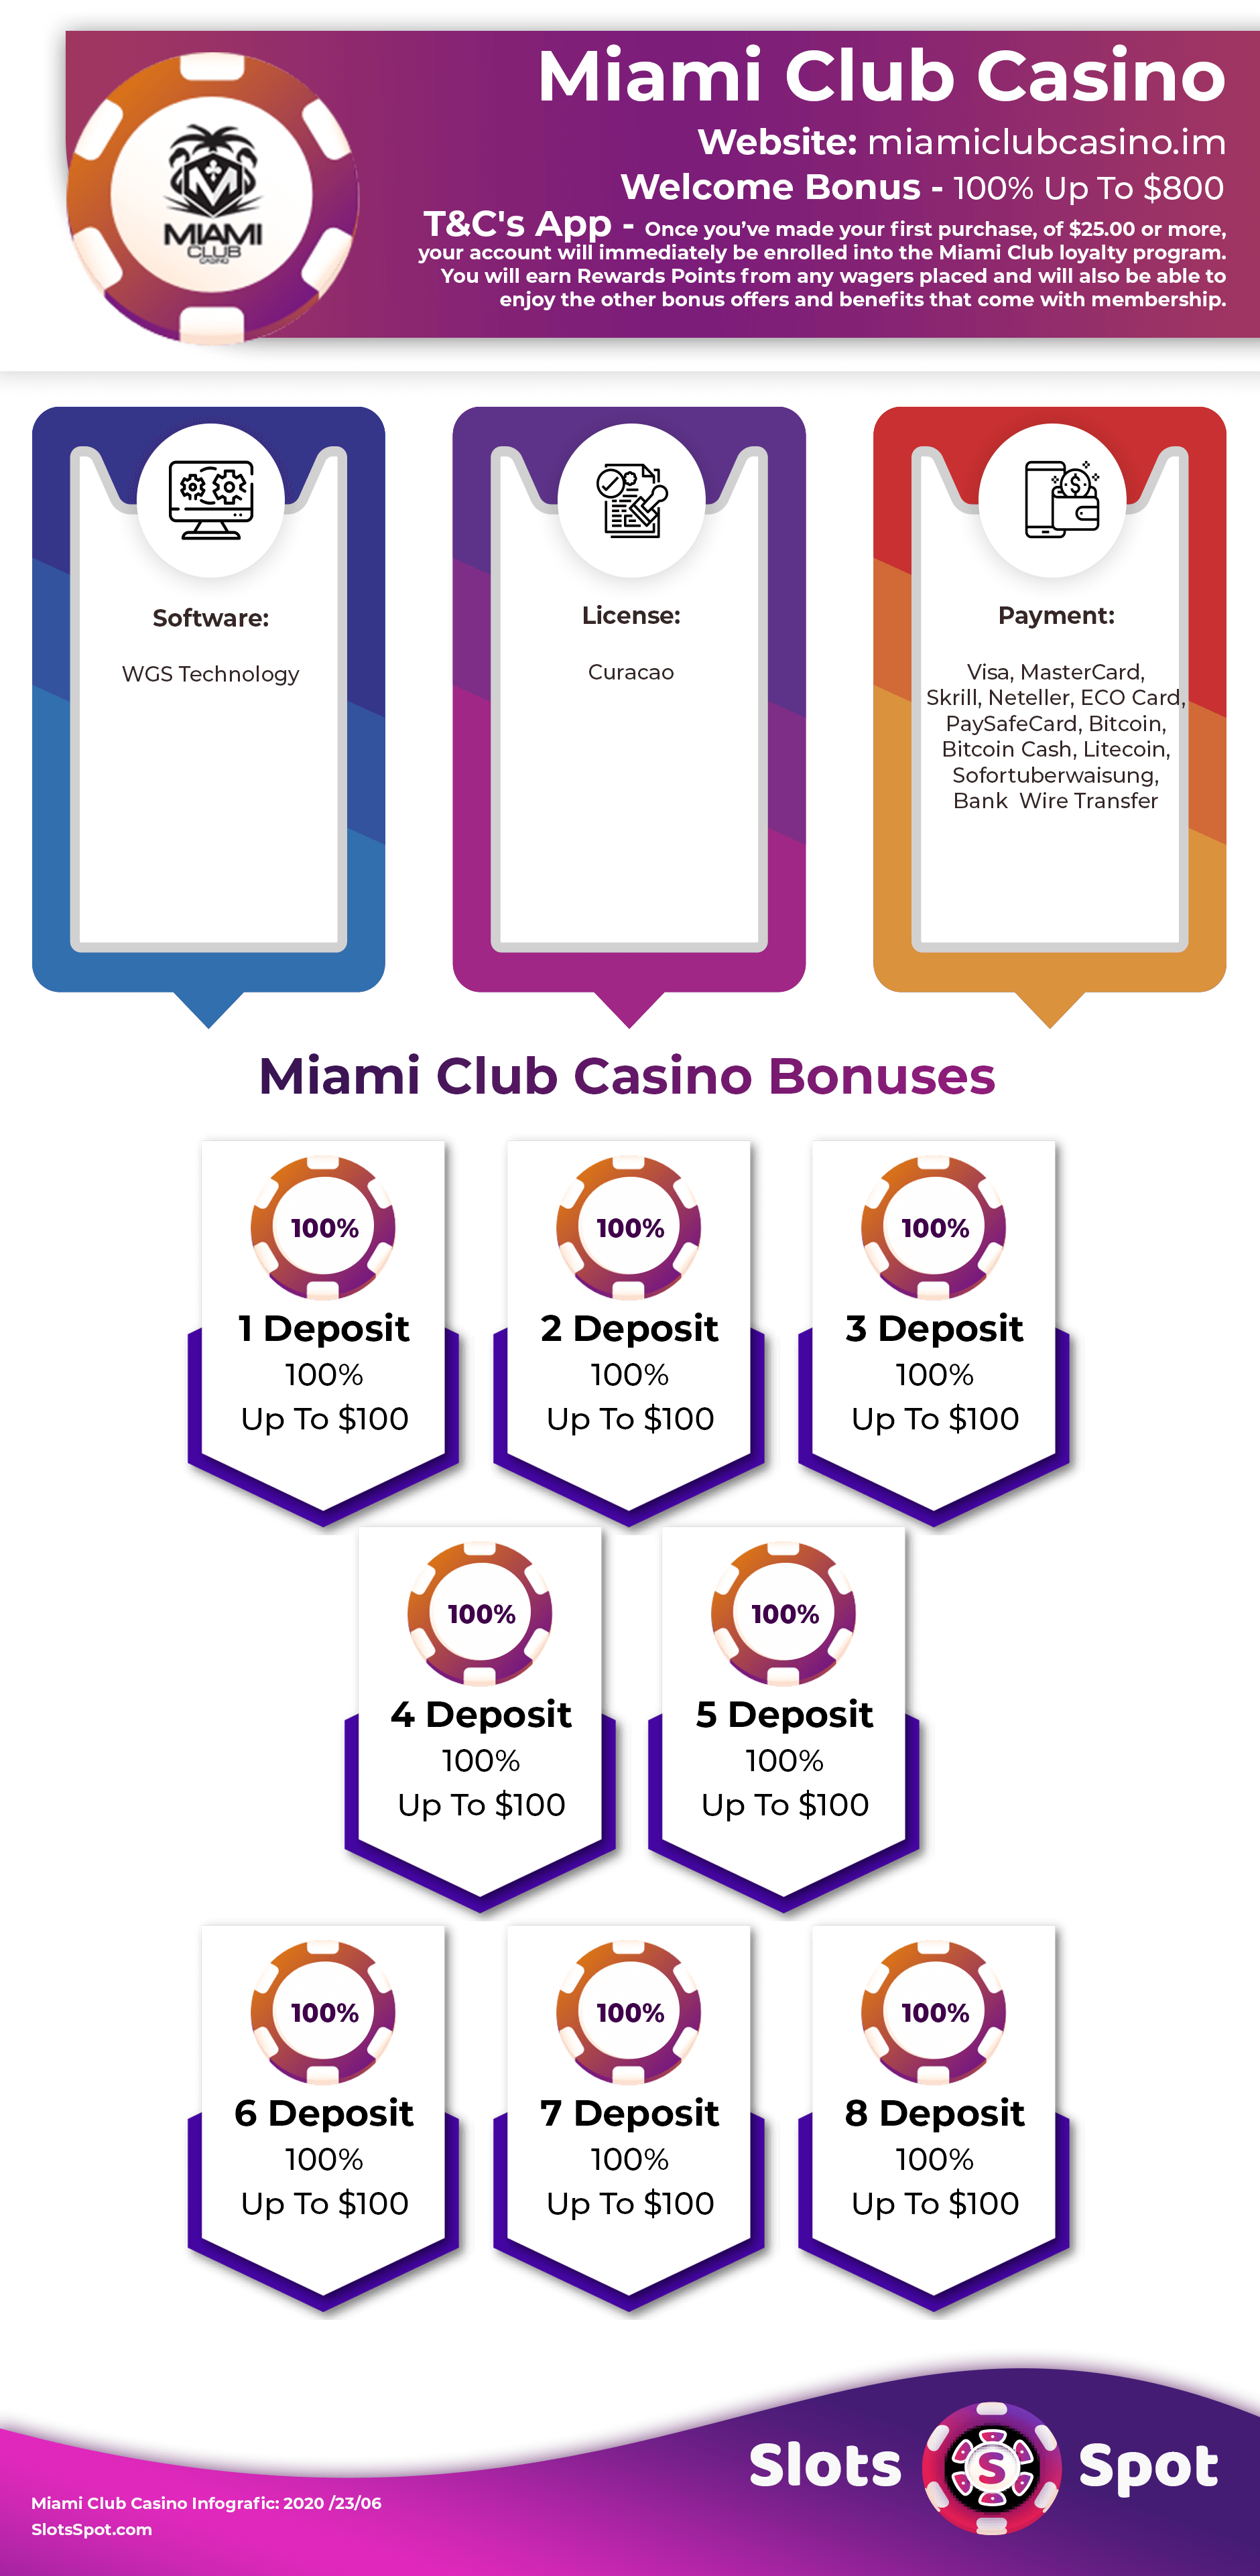 Miami club casino no deposit bonus codes october 2019